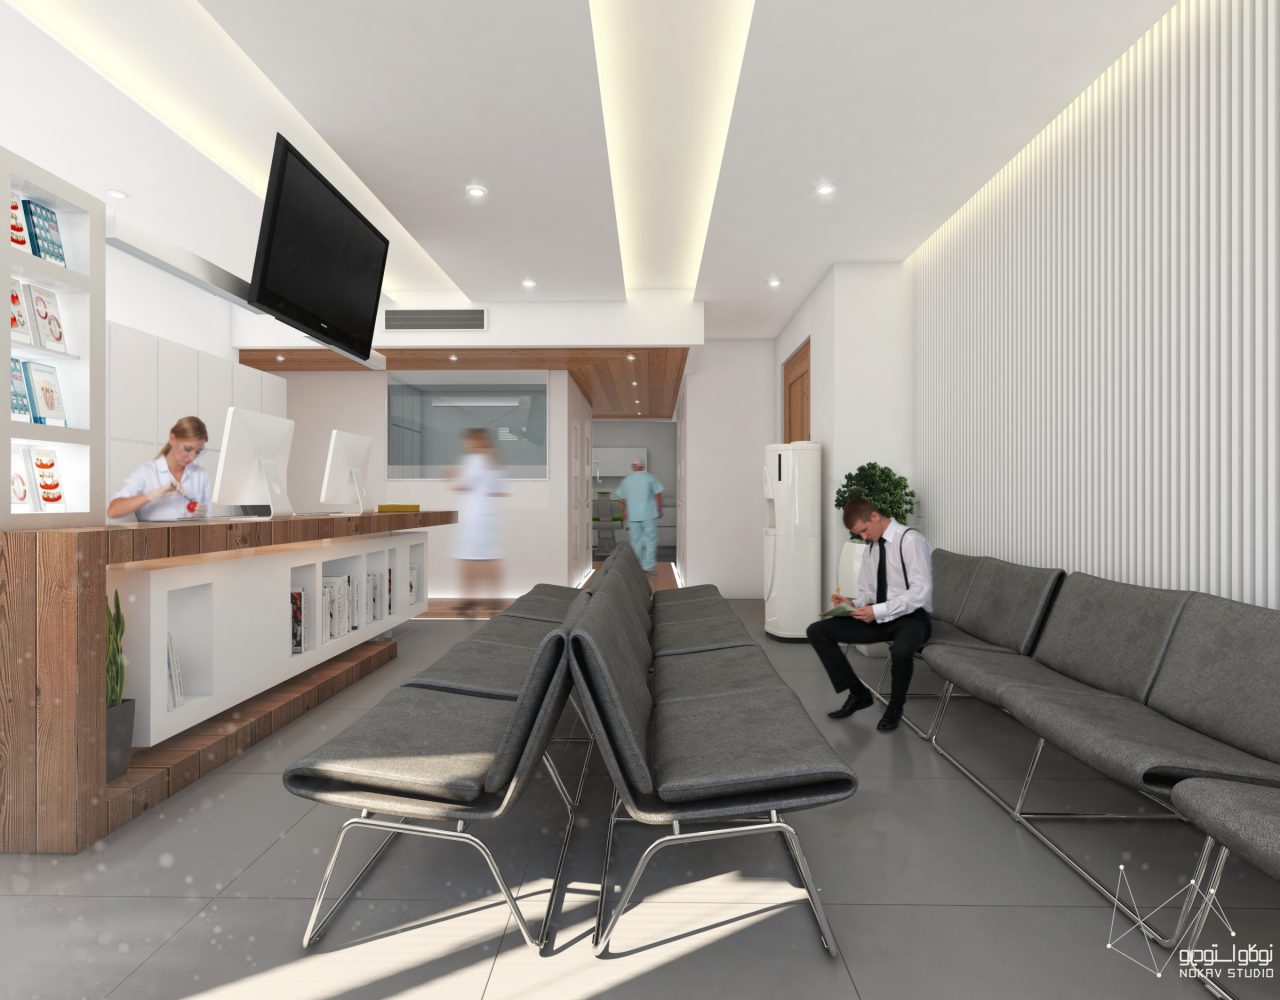 طراحی داخلی مطب دندانپزشکی خورشید شرق